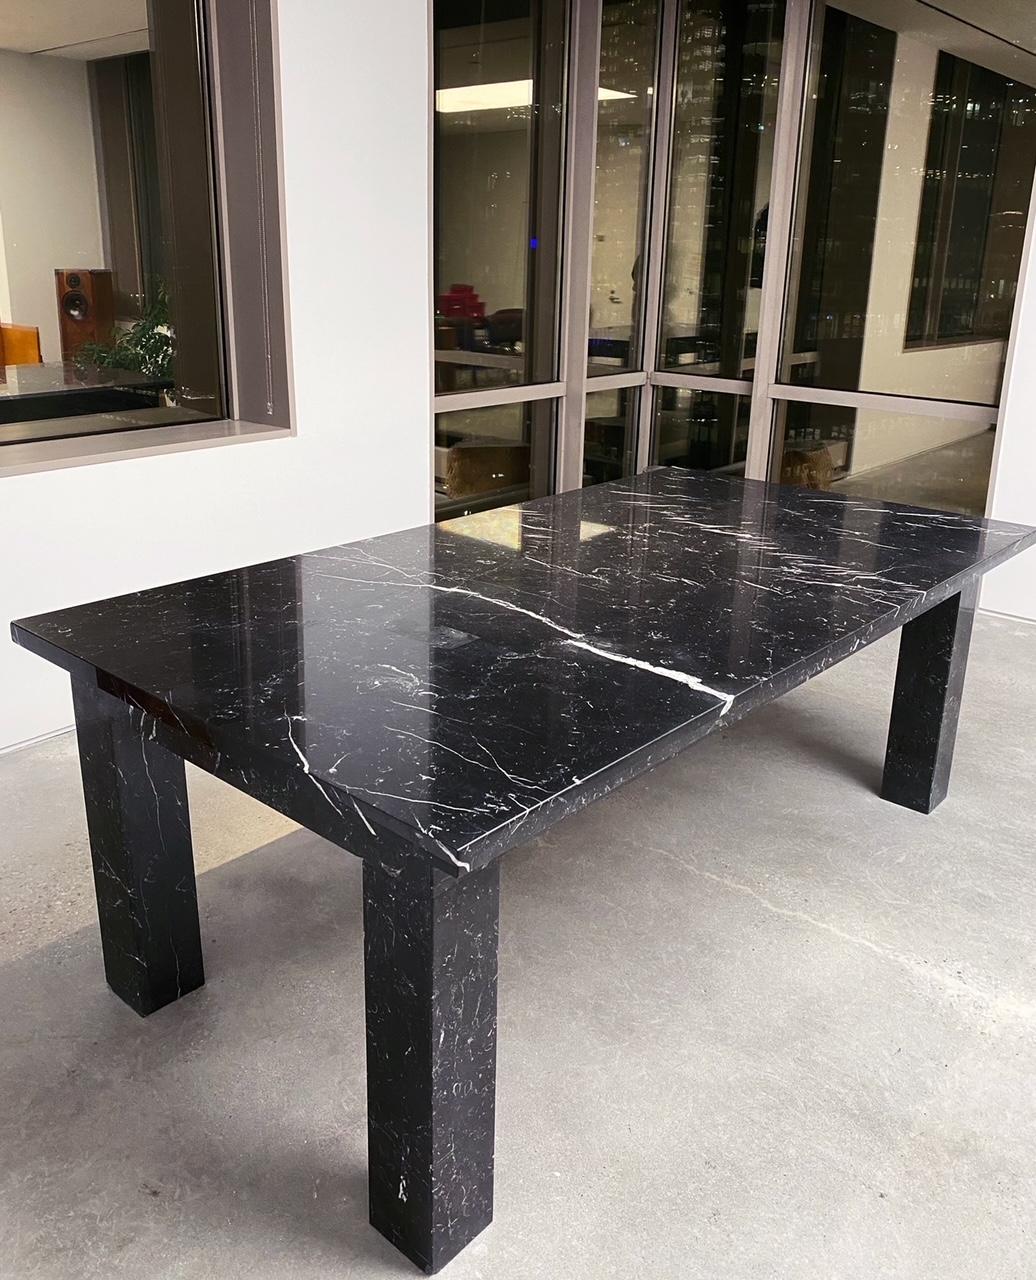 Magnifique table de conférence en marbre noir et blanc, années 2000

Épaisse et belle. Il a été conçu sur mesure pour un showroom de mode haut de gamme. Noir avec des veines de marbre sur toute la surface. Épais, solide et lourd.